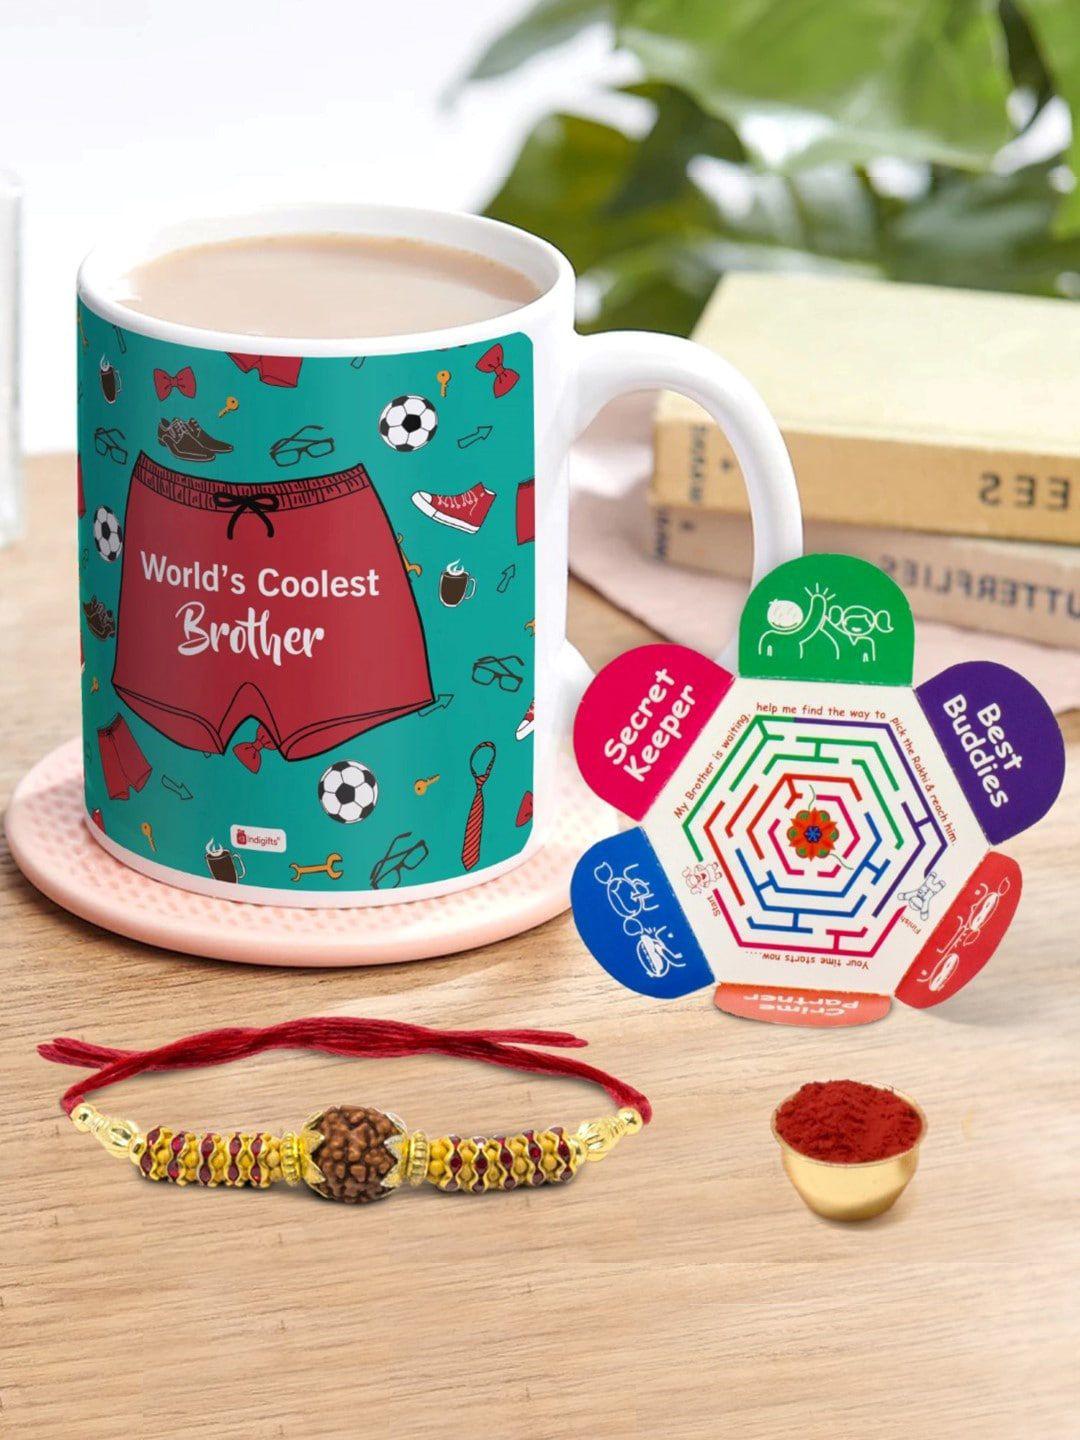 indigifts rudraksha rakhi with printed coffee mug